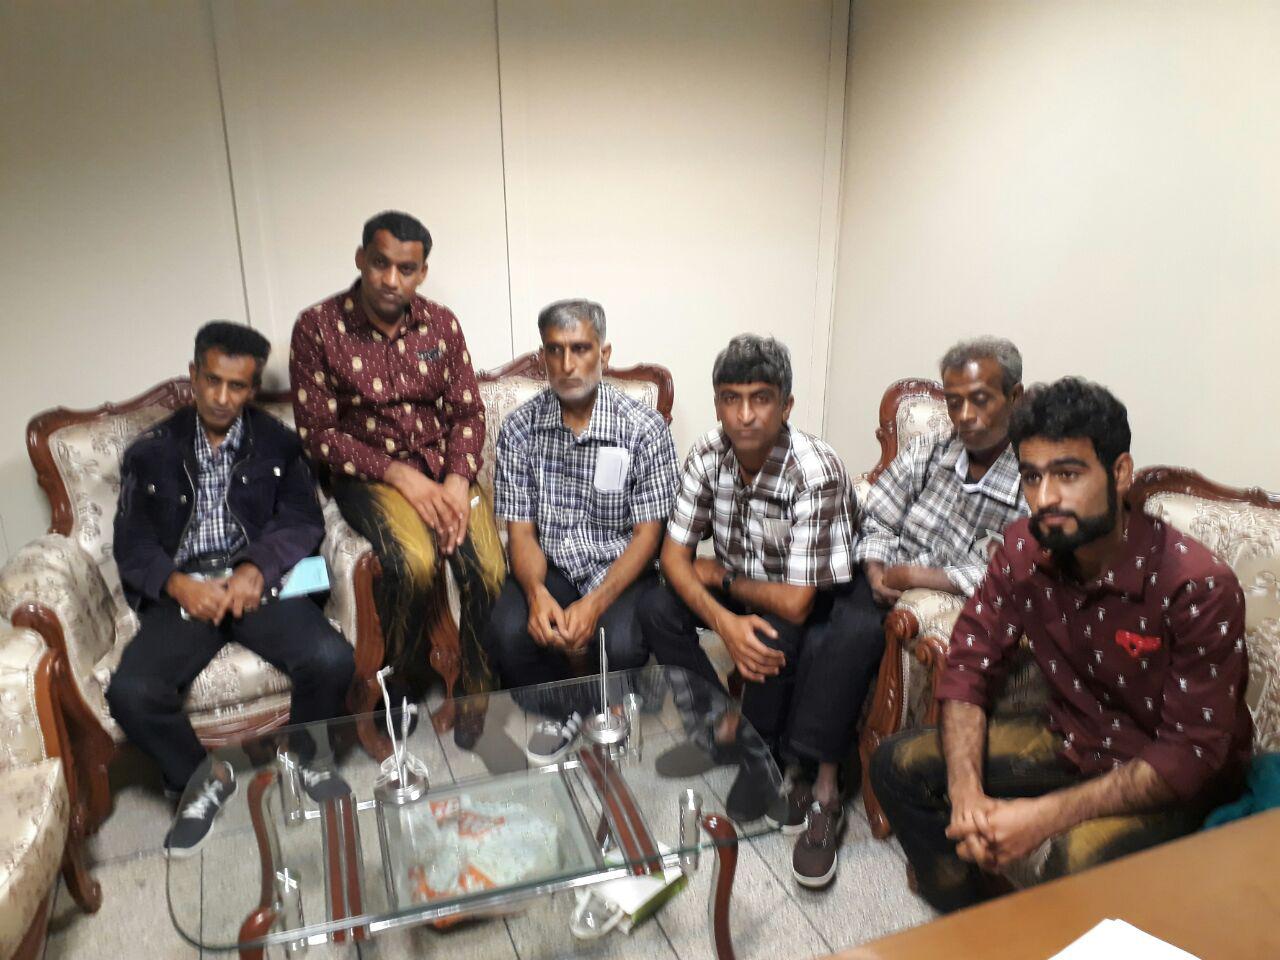 شش ملوان ایرانی نجات یافته از اقیانوس هند به میهن بازگشتند